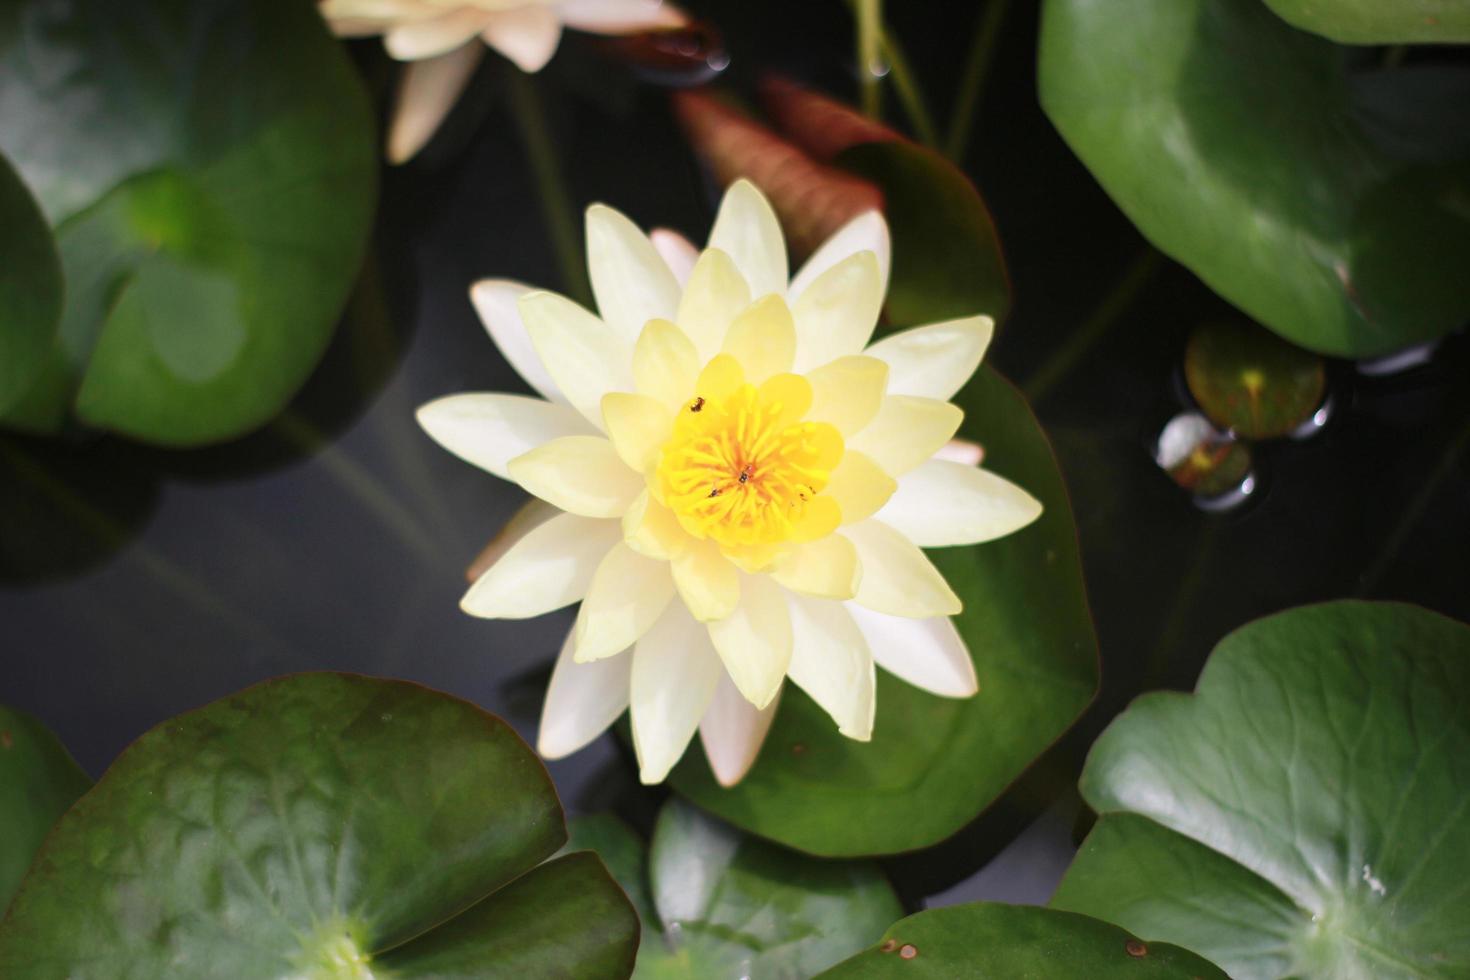 vue de dessus de la fleur de lotus blanc et jaune photo